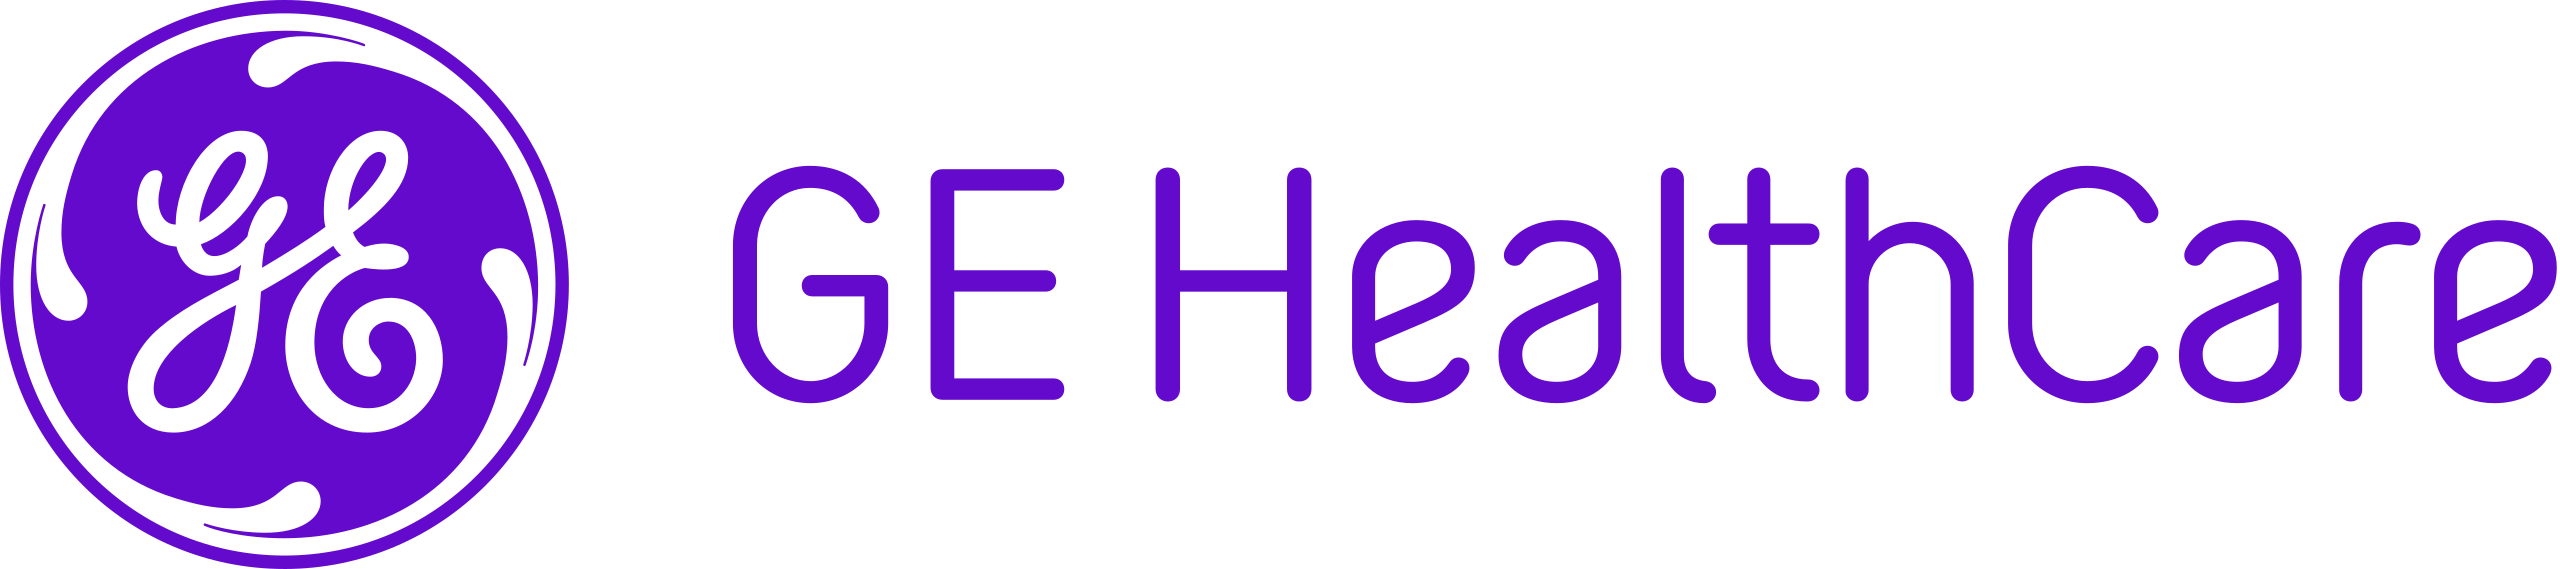 GE_HealthCare_logo_2023.svg.png